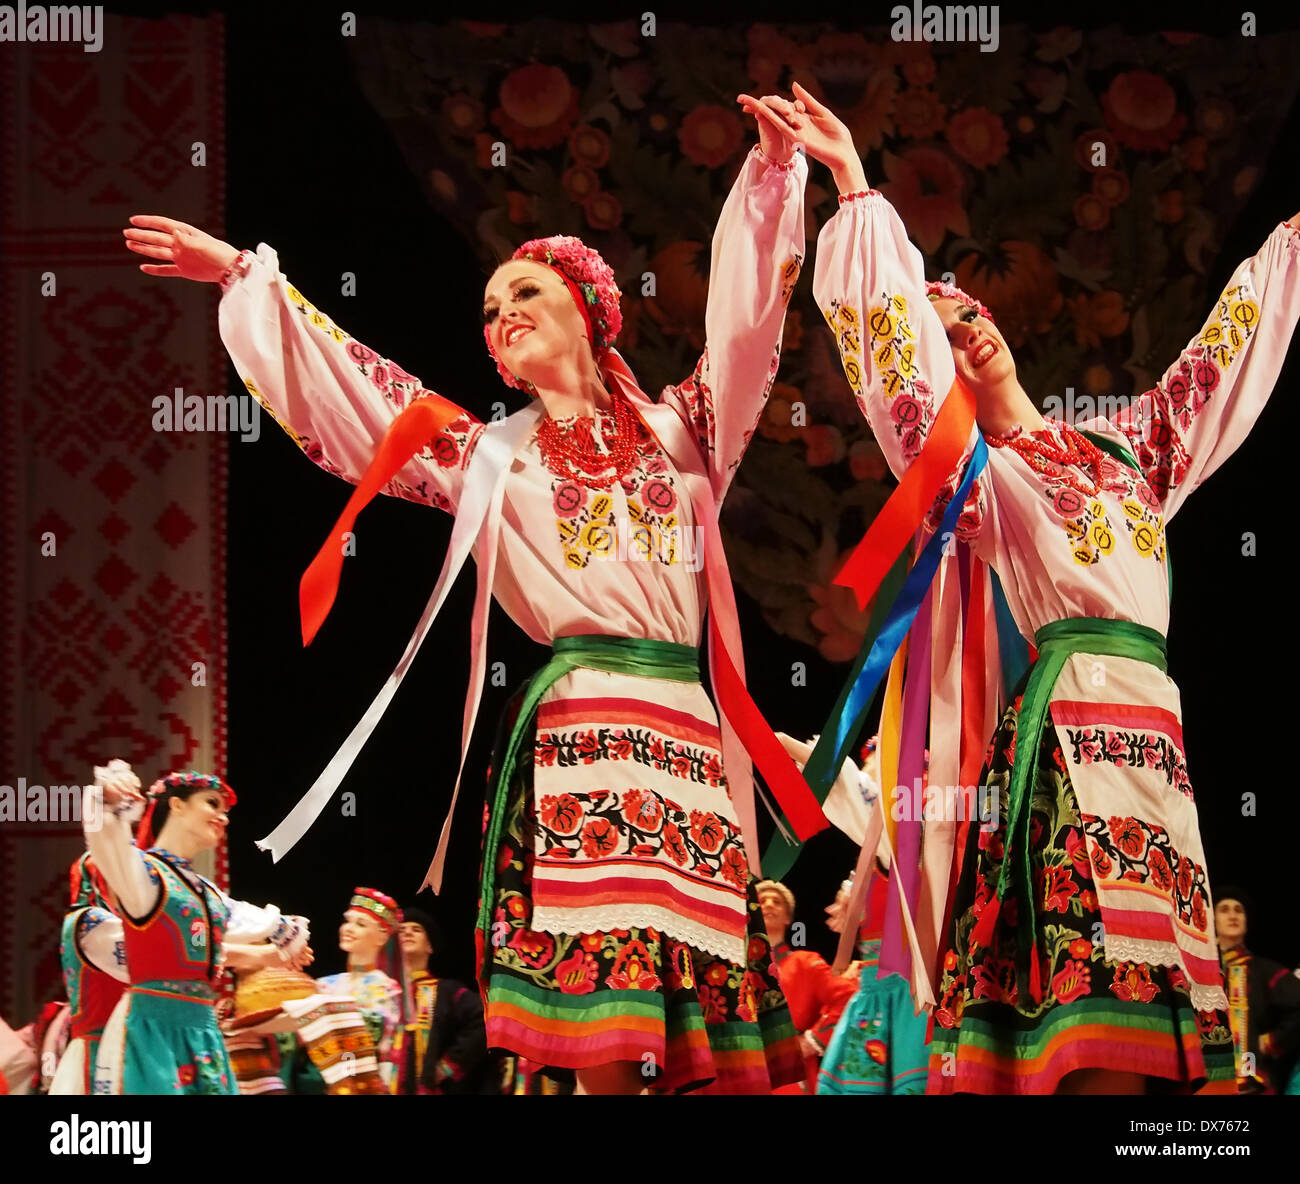 Lugansk, Ucrania. El 18 de enero de 2014. La danza folklórica nacional de  Ucrania Ensemble nombrado después P. Virsky, quien es considerado el mejor  bailarín de ballet folclórico del país, realizó una